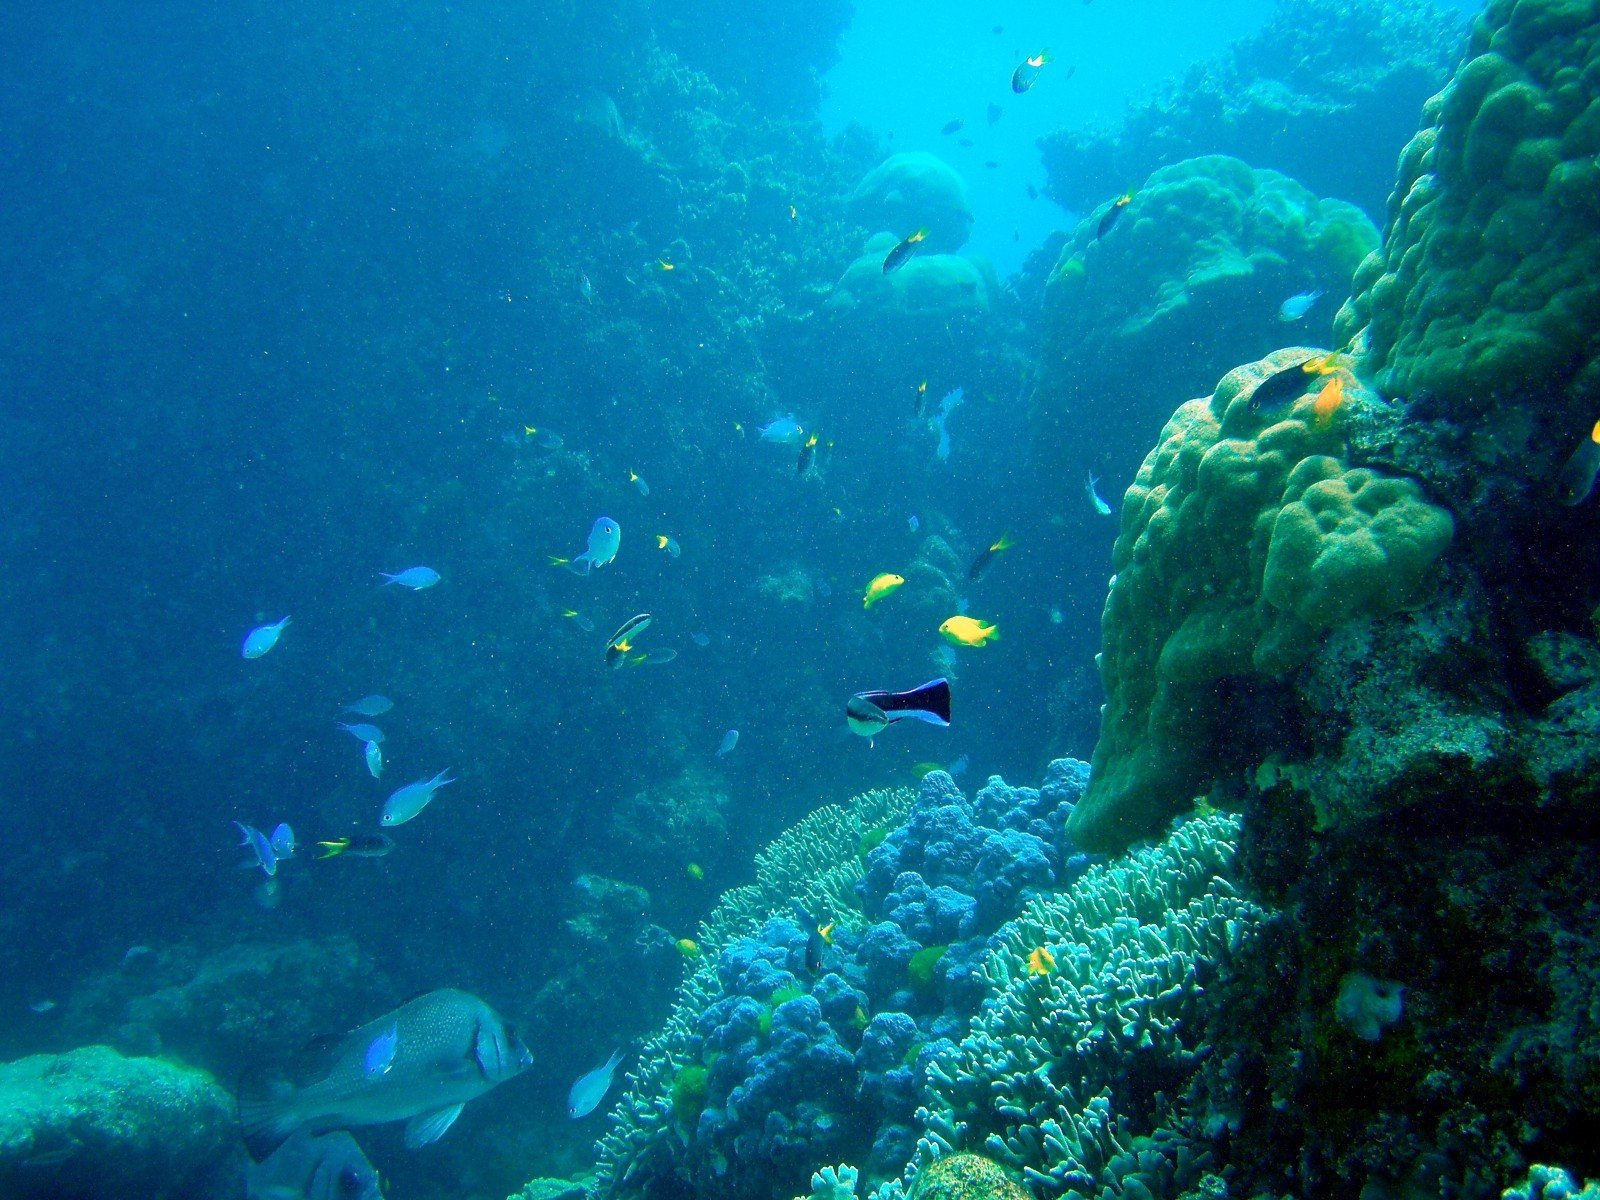 Картинка на дне моря. Море глубина. Море под водой. Подводный пейзаж. Морские глубины.